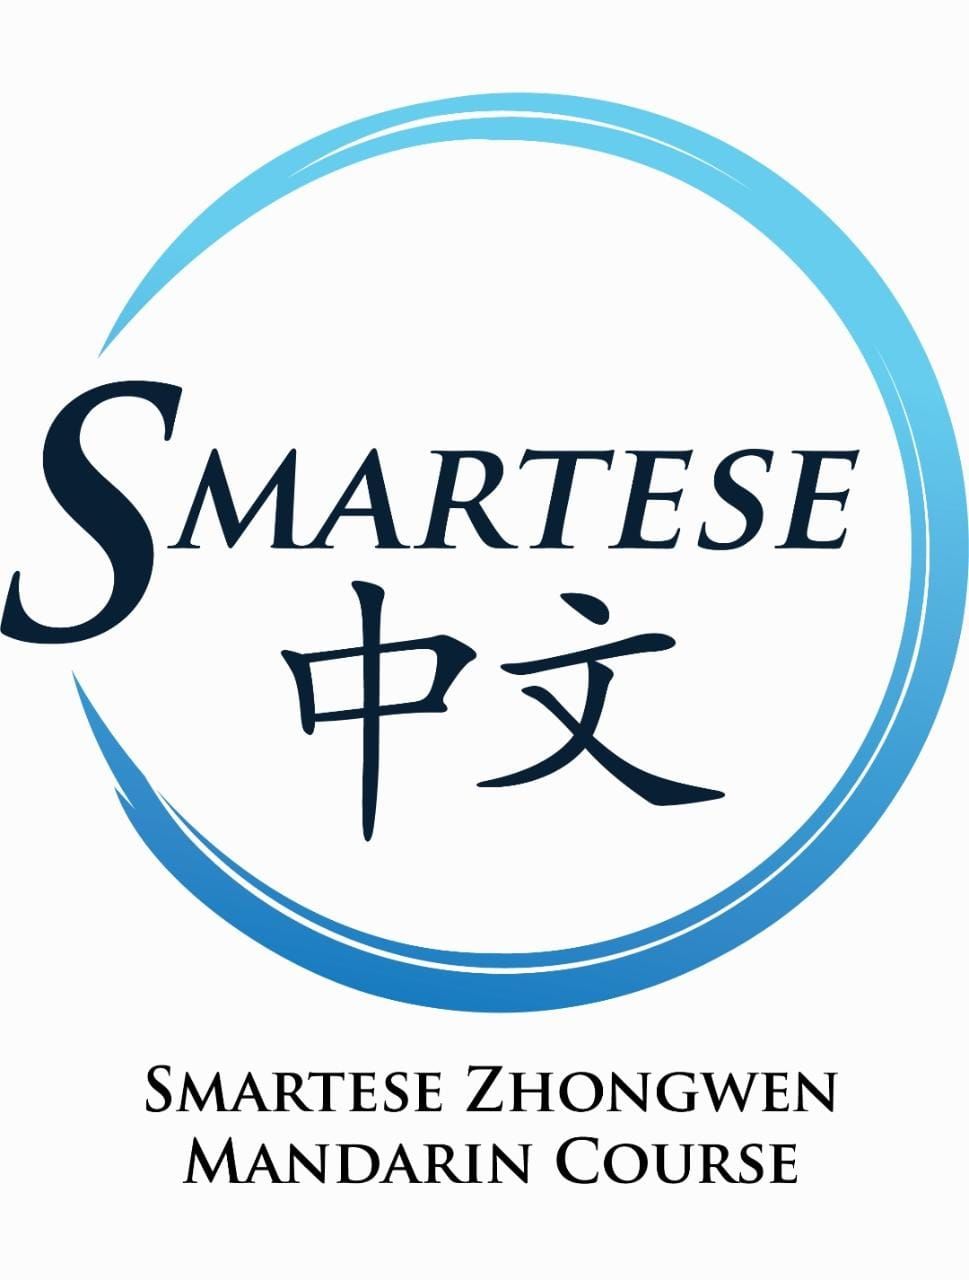 Smartese Zhongwen